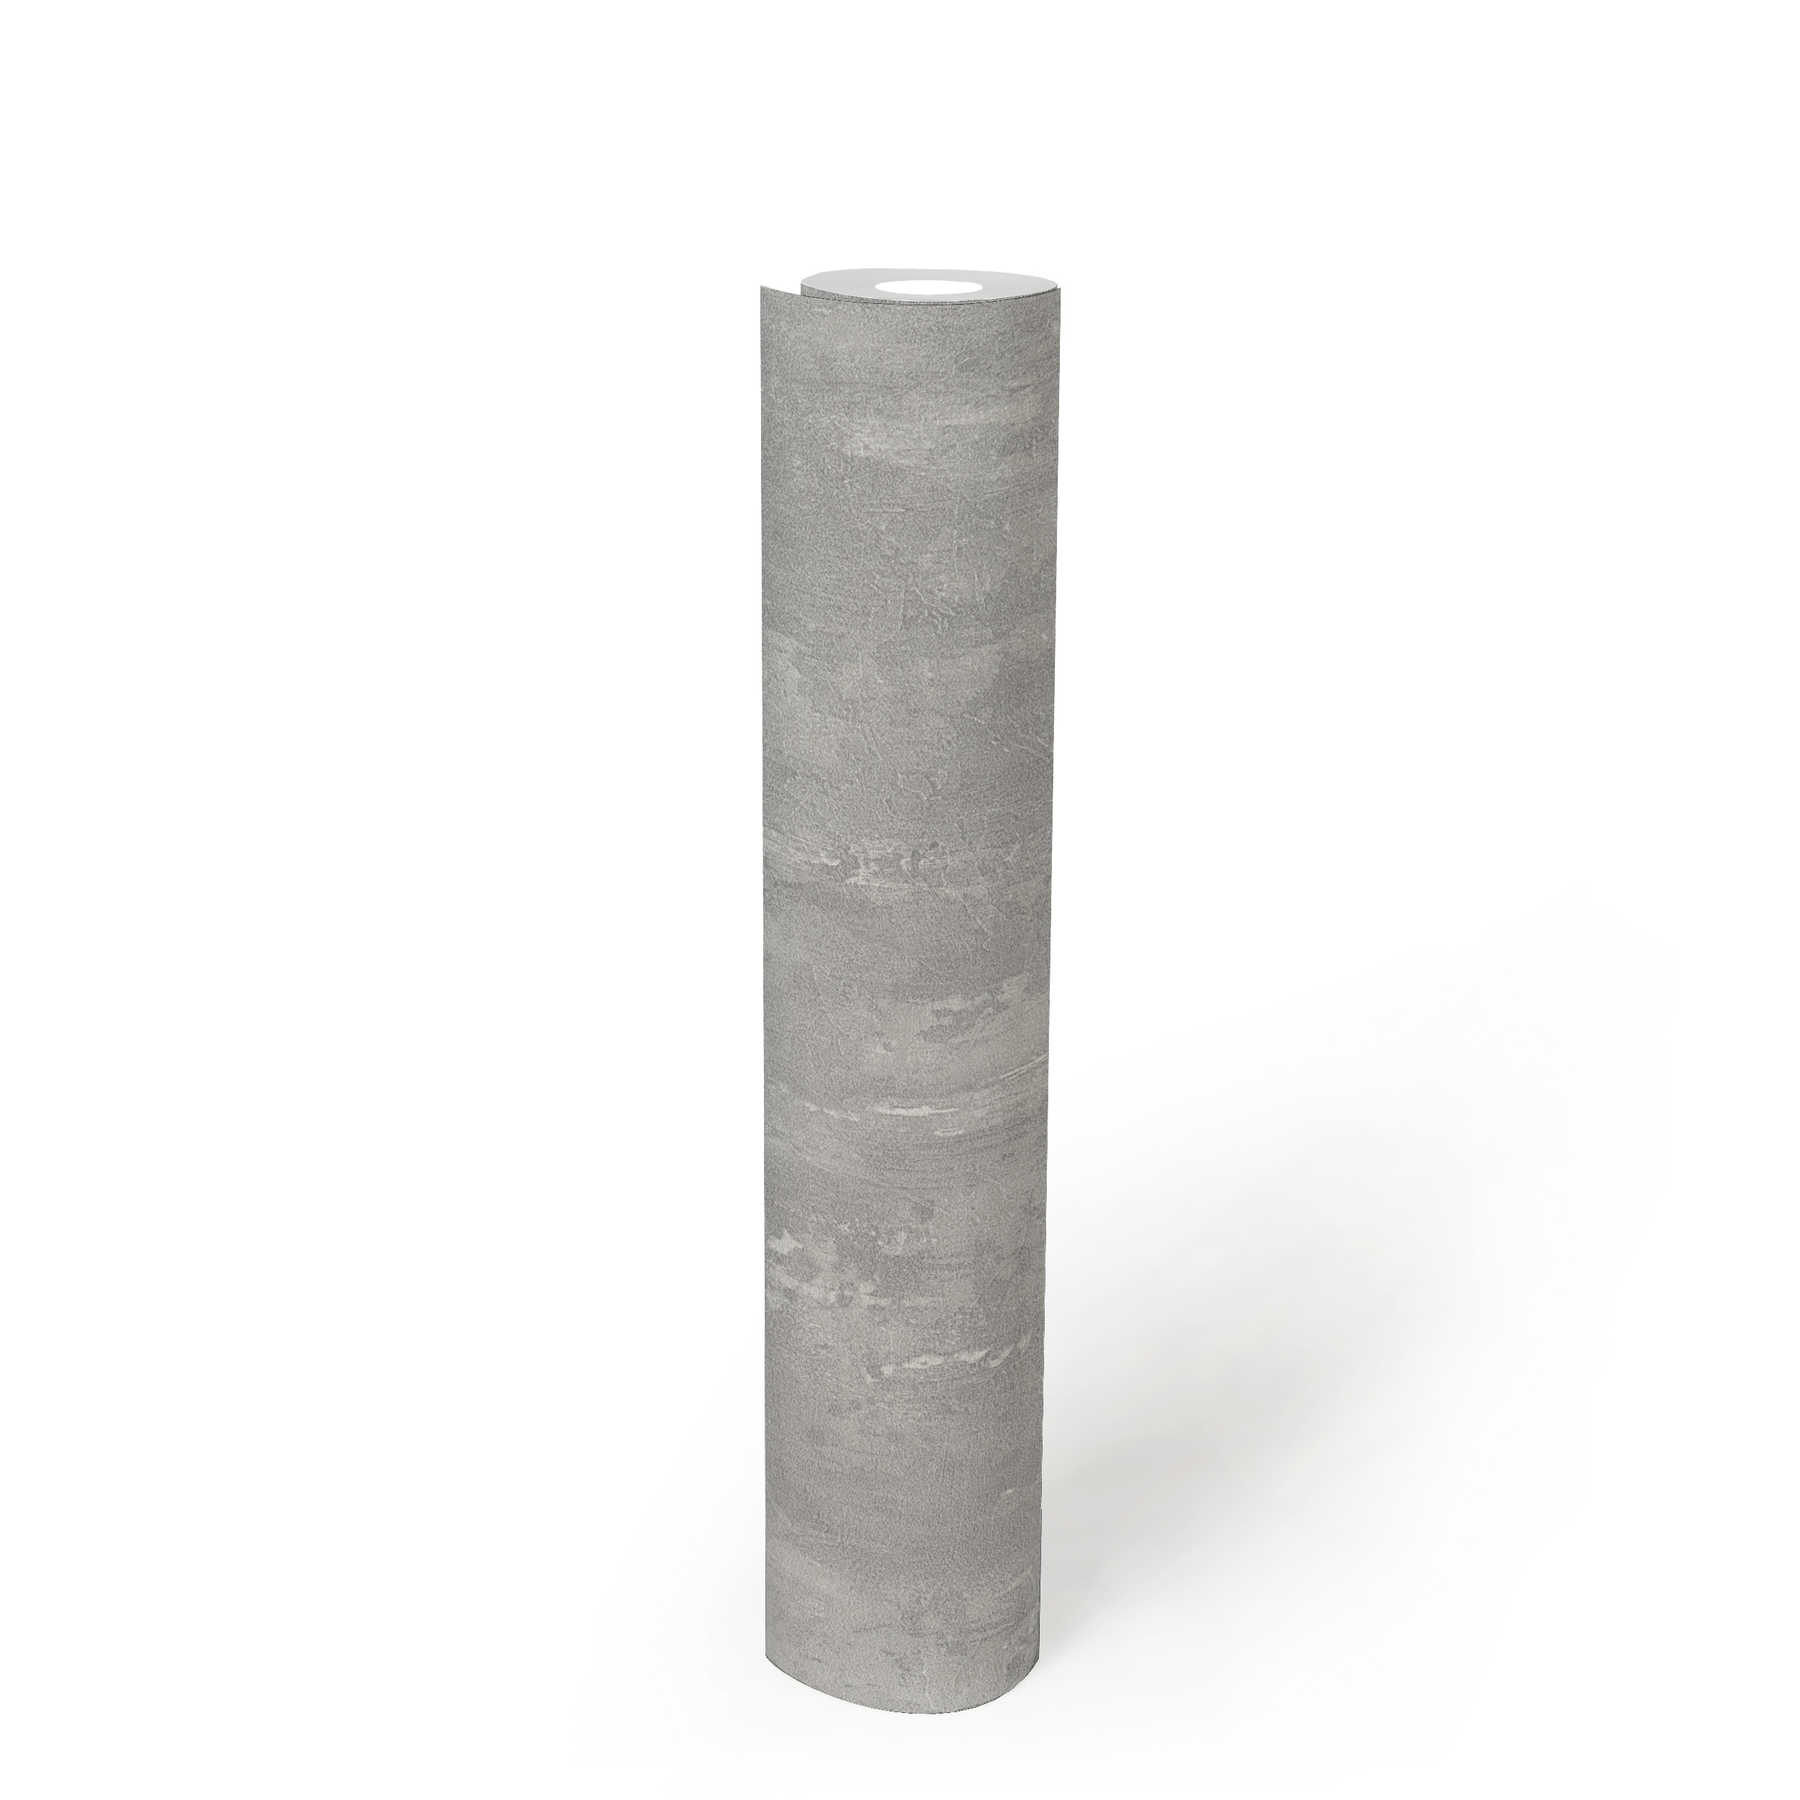             Carta da parati con struttura in gesso, aspetto concreto e sfumatura di colore - grigio
        